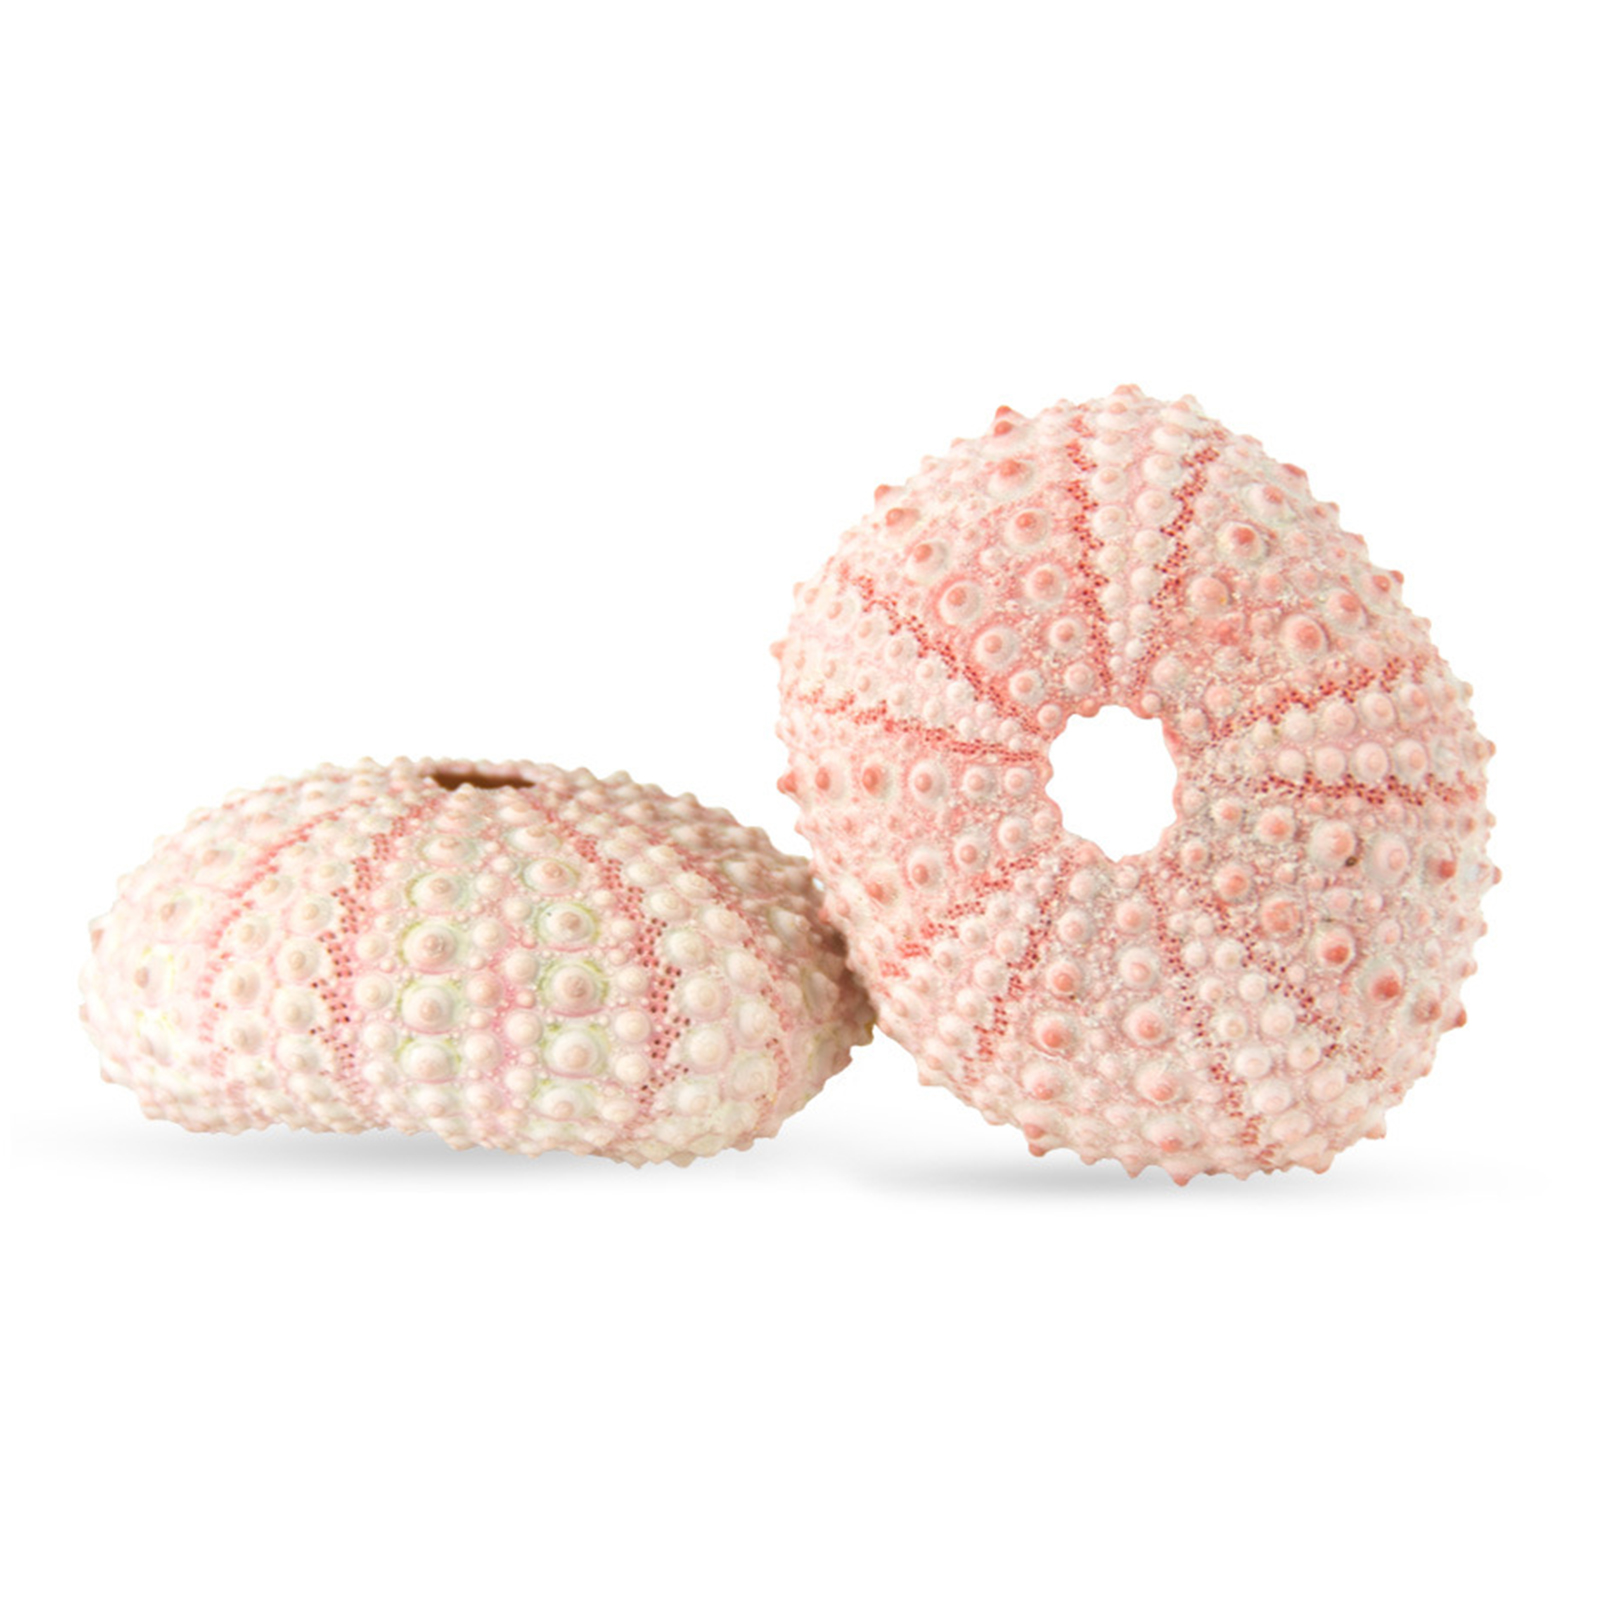 Yoone Sea Urchin Shell High Durability Exquisite Shape Eye-catching ...